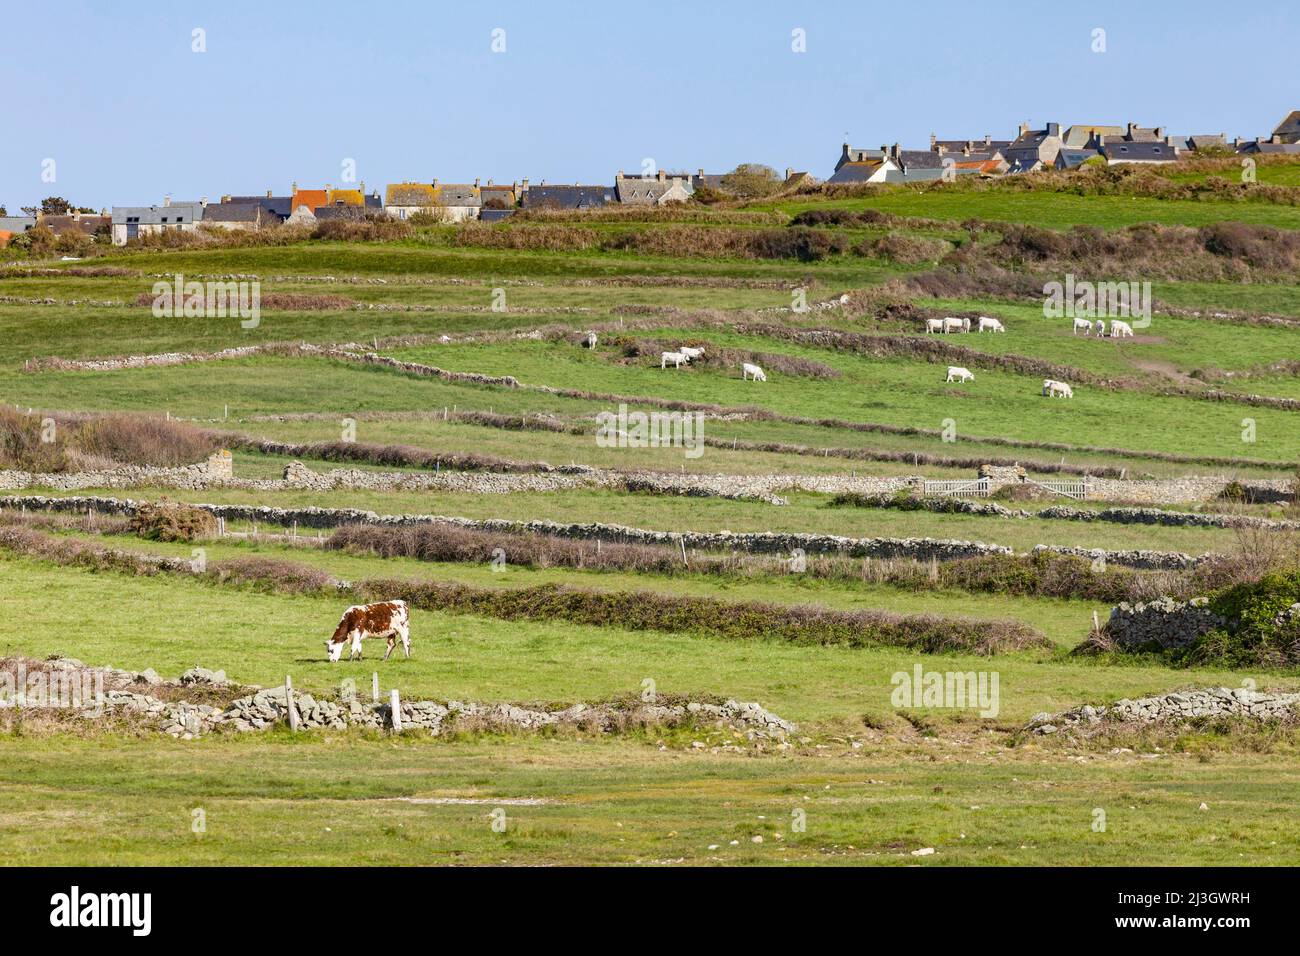 France, Manche, Cotentin, Cape Hague, Auderville, Goury harbour, village, cow and pasture Stock Photo